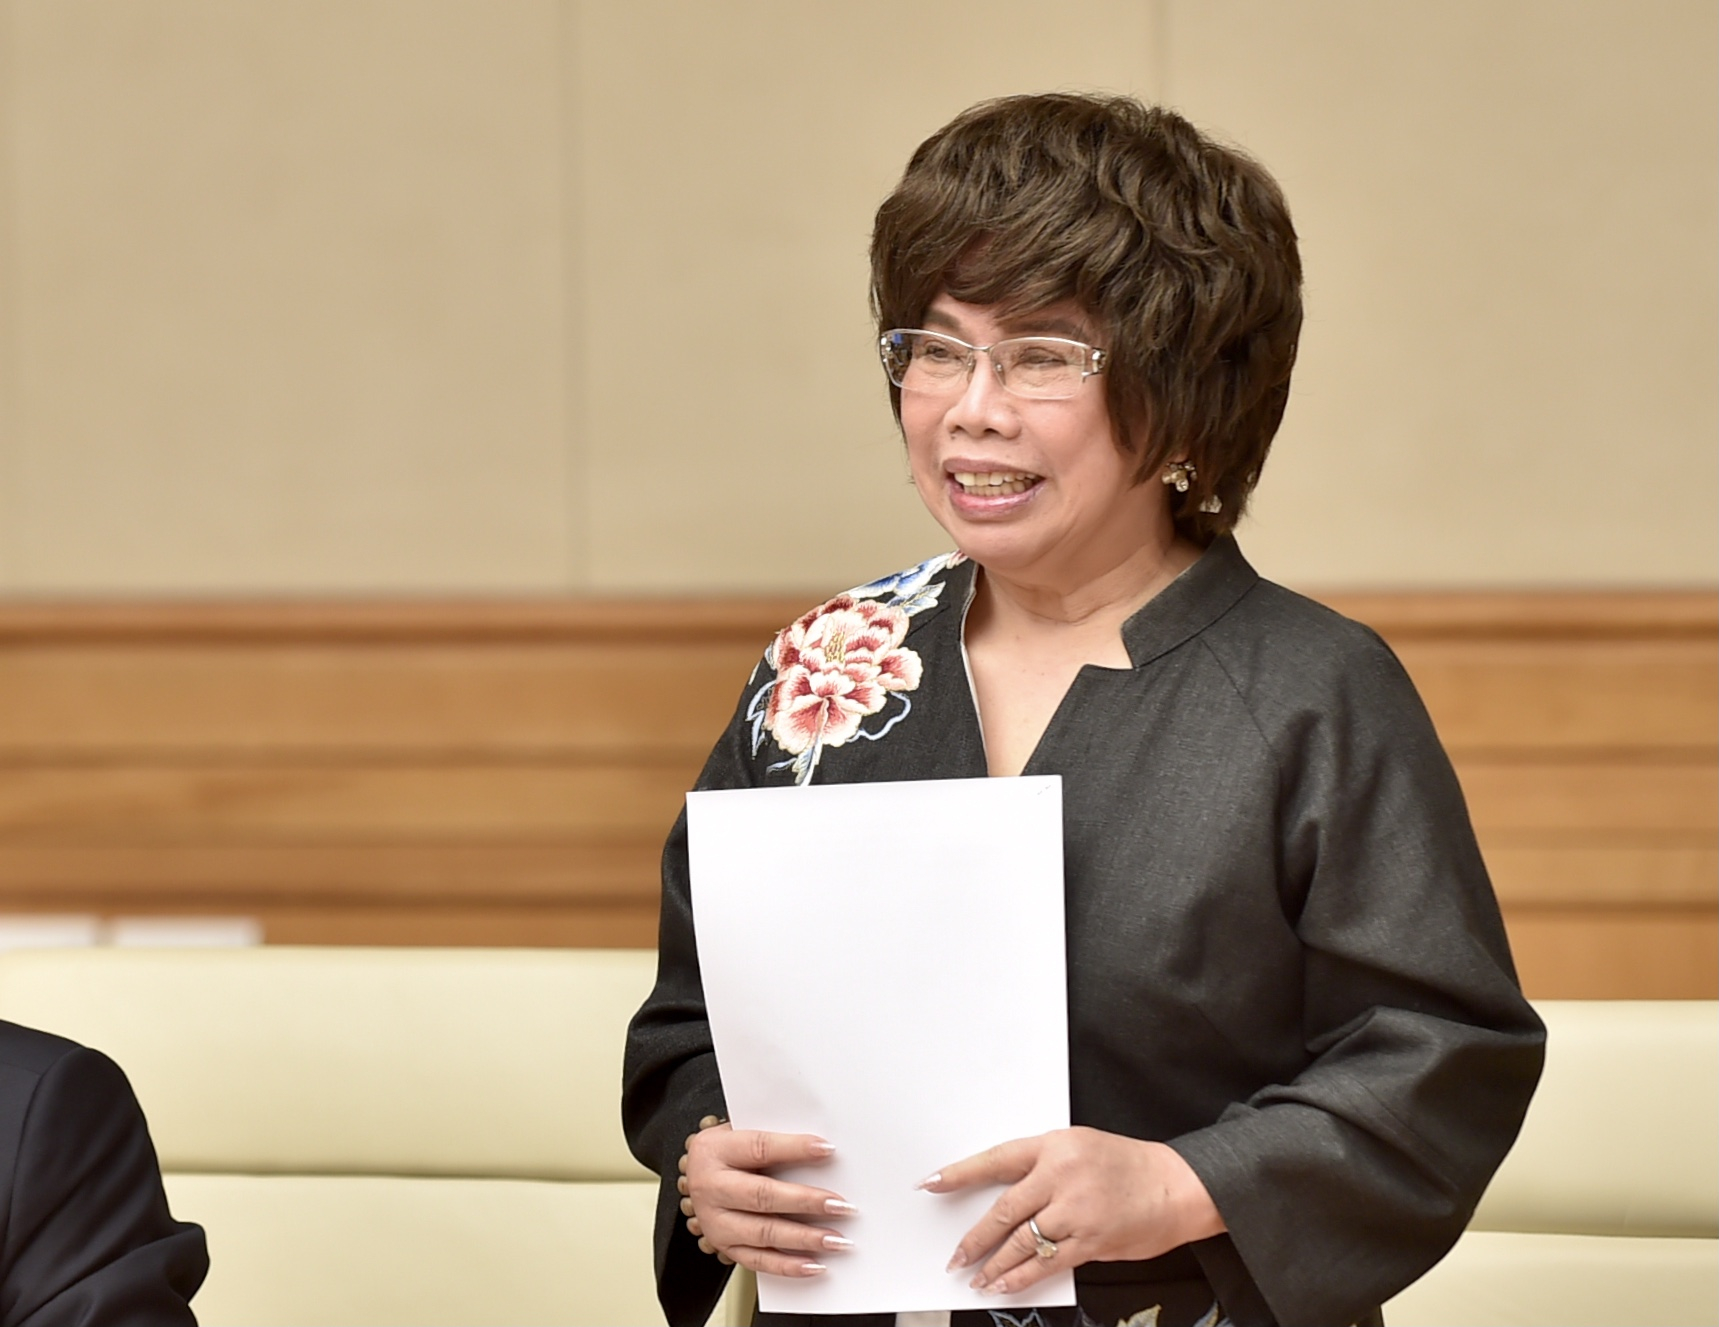 Bà Thái Hương, Chủ tịch Hiệp hội Nữ doanh nhân Việt Nam phát biểu tại buổi gặp mặt. Ảnh: VGP.